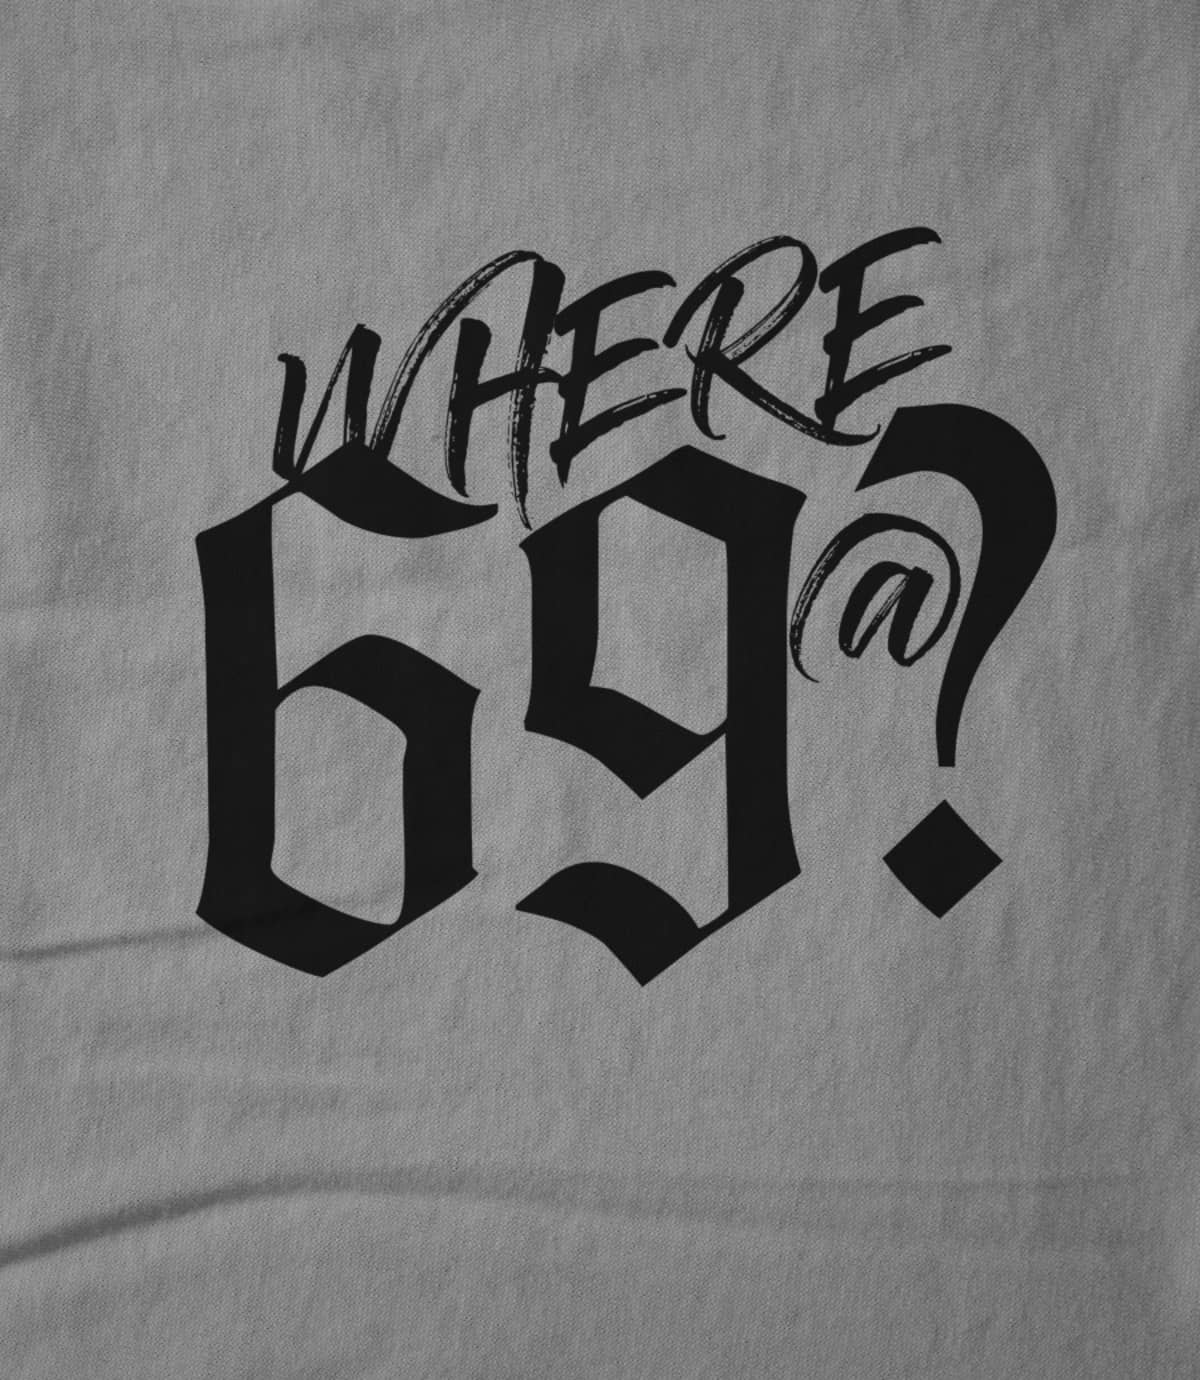 Where 69@?